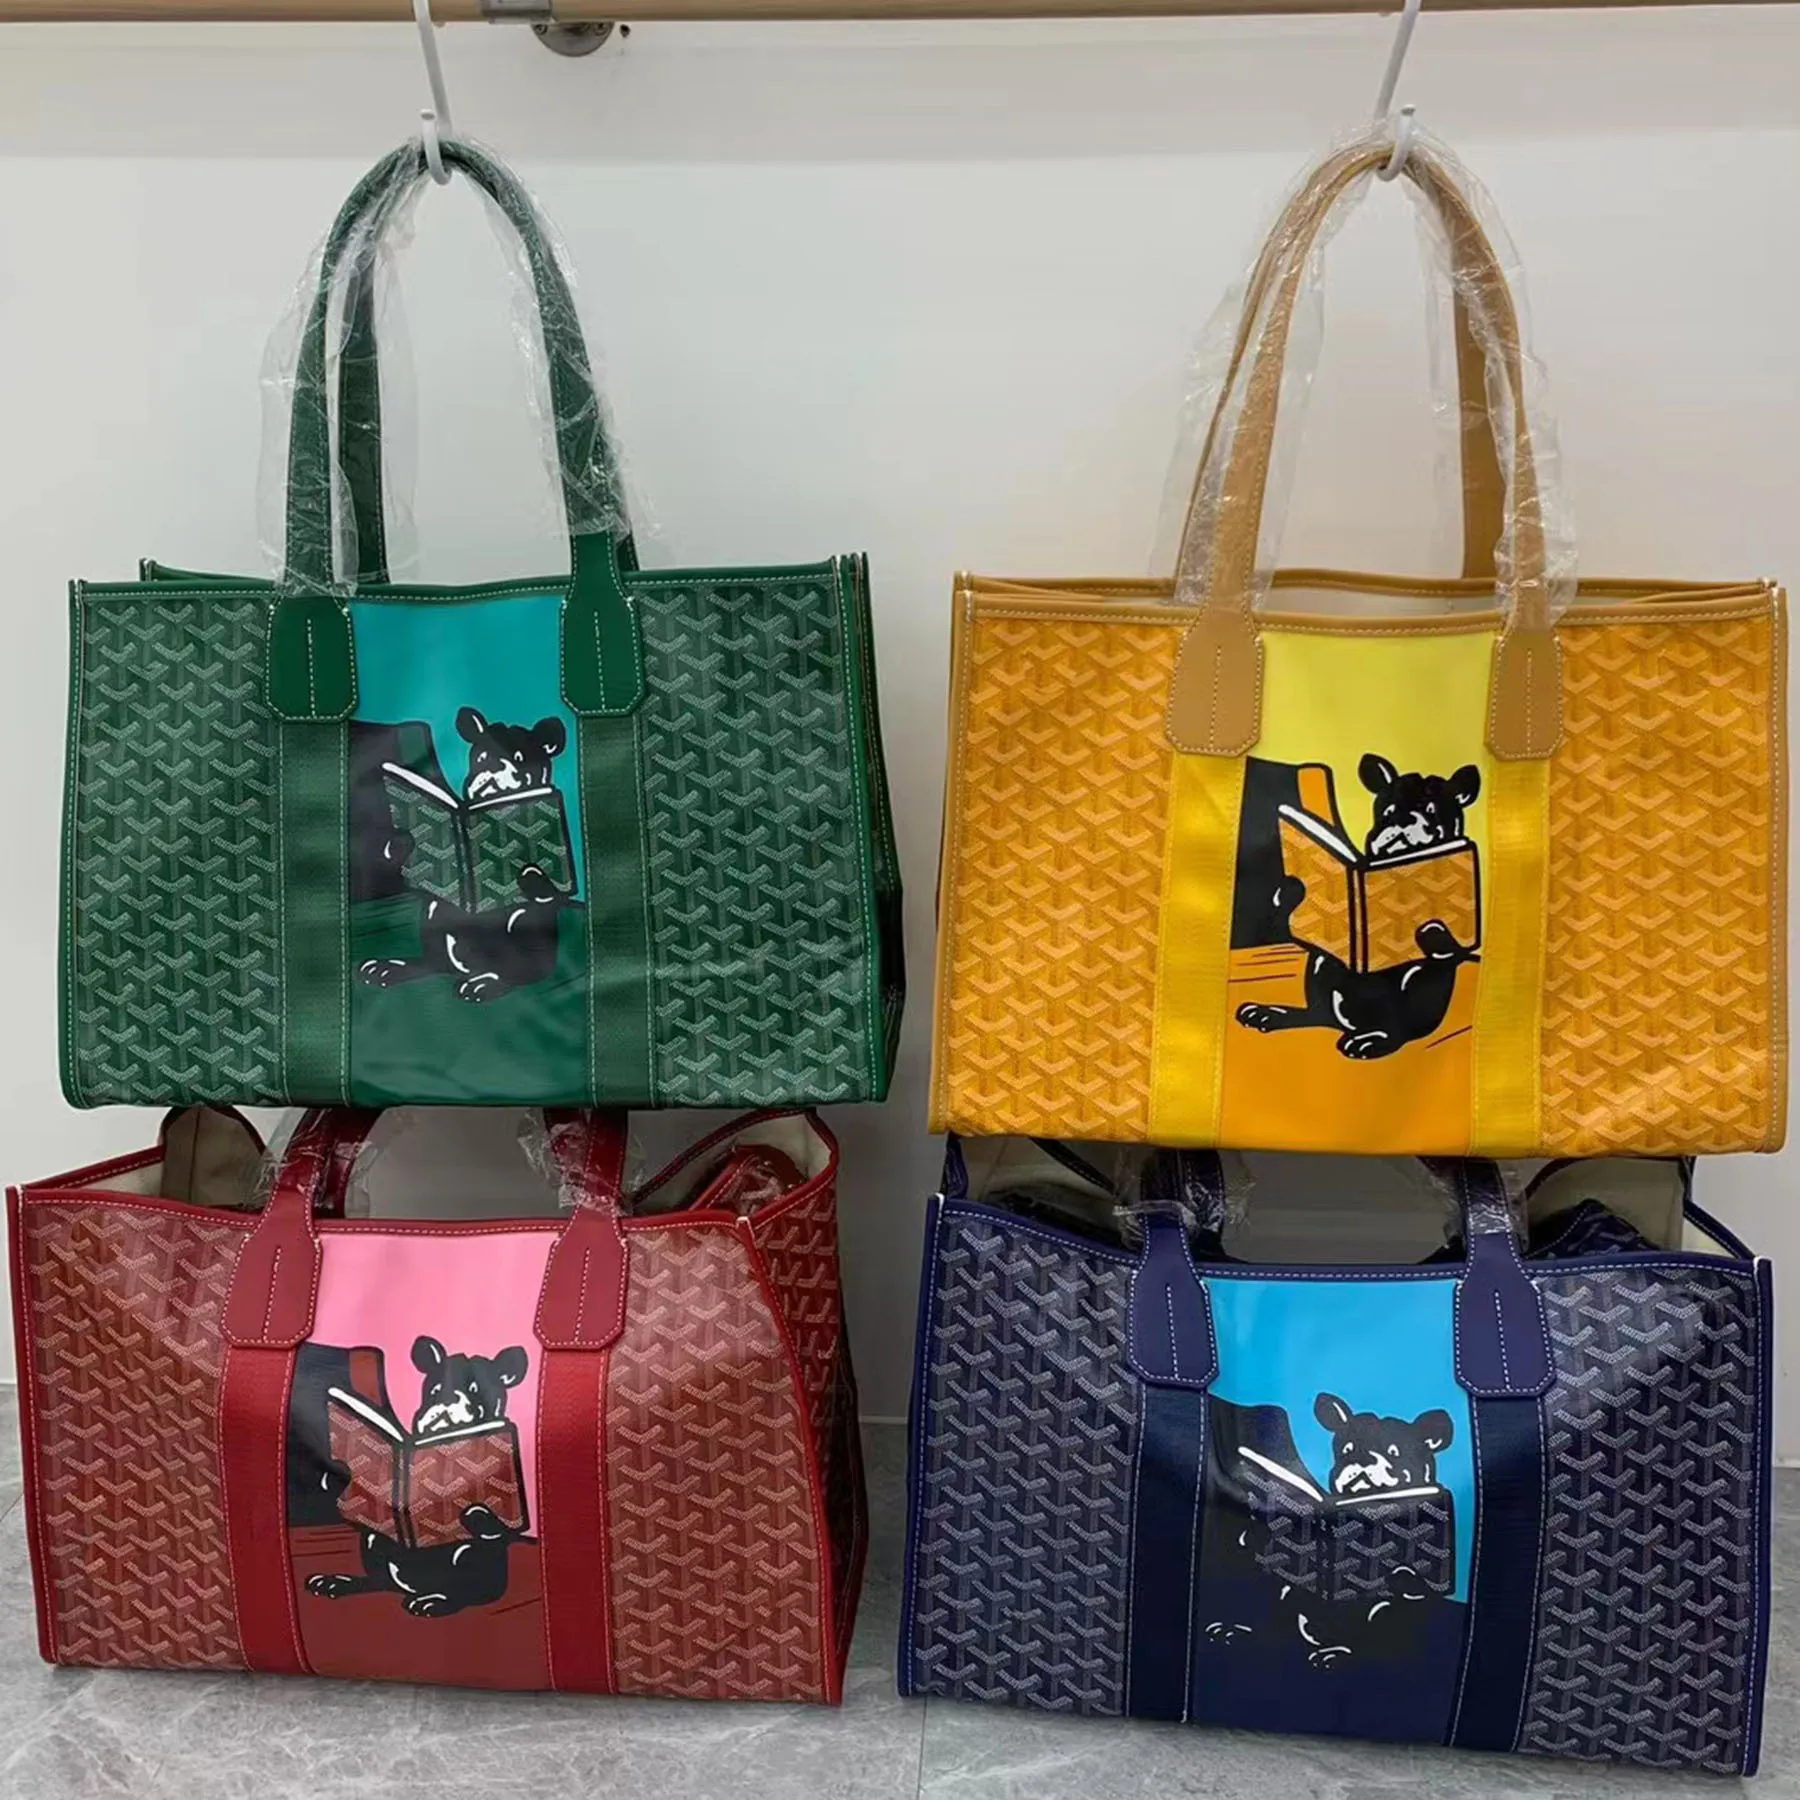 10A designer large villette tote women luxury gy handbag genuine leather widened soft handle messenger bag high quality shoulde bag with 4 color